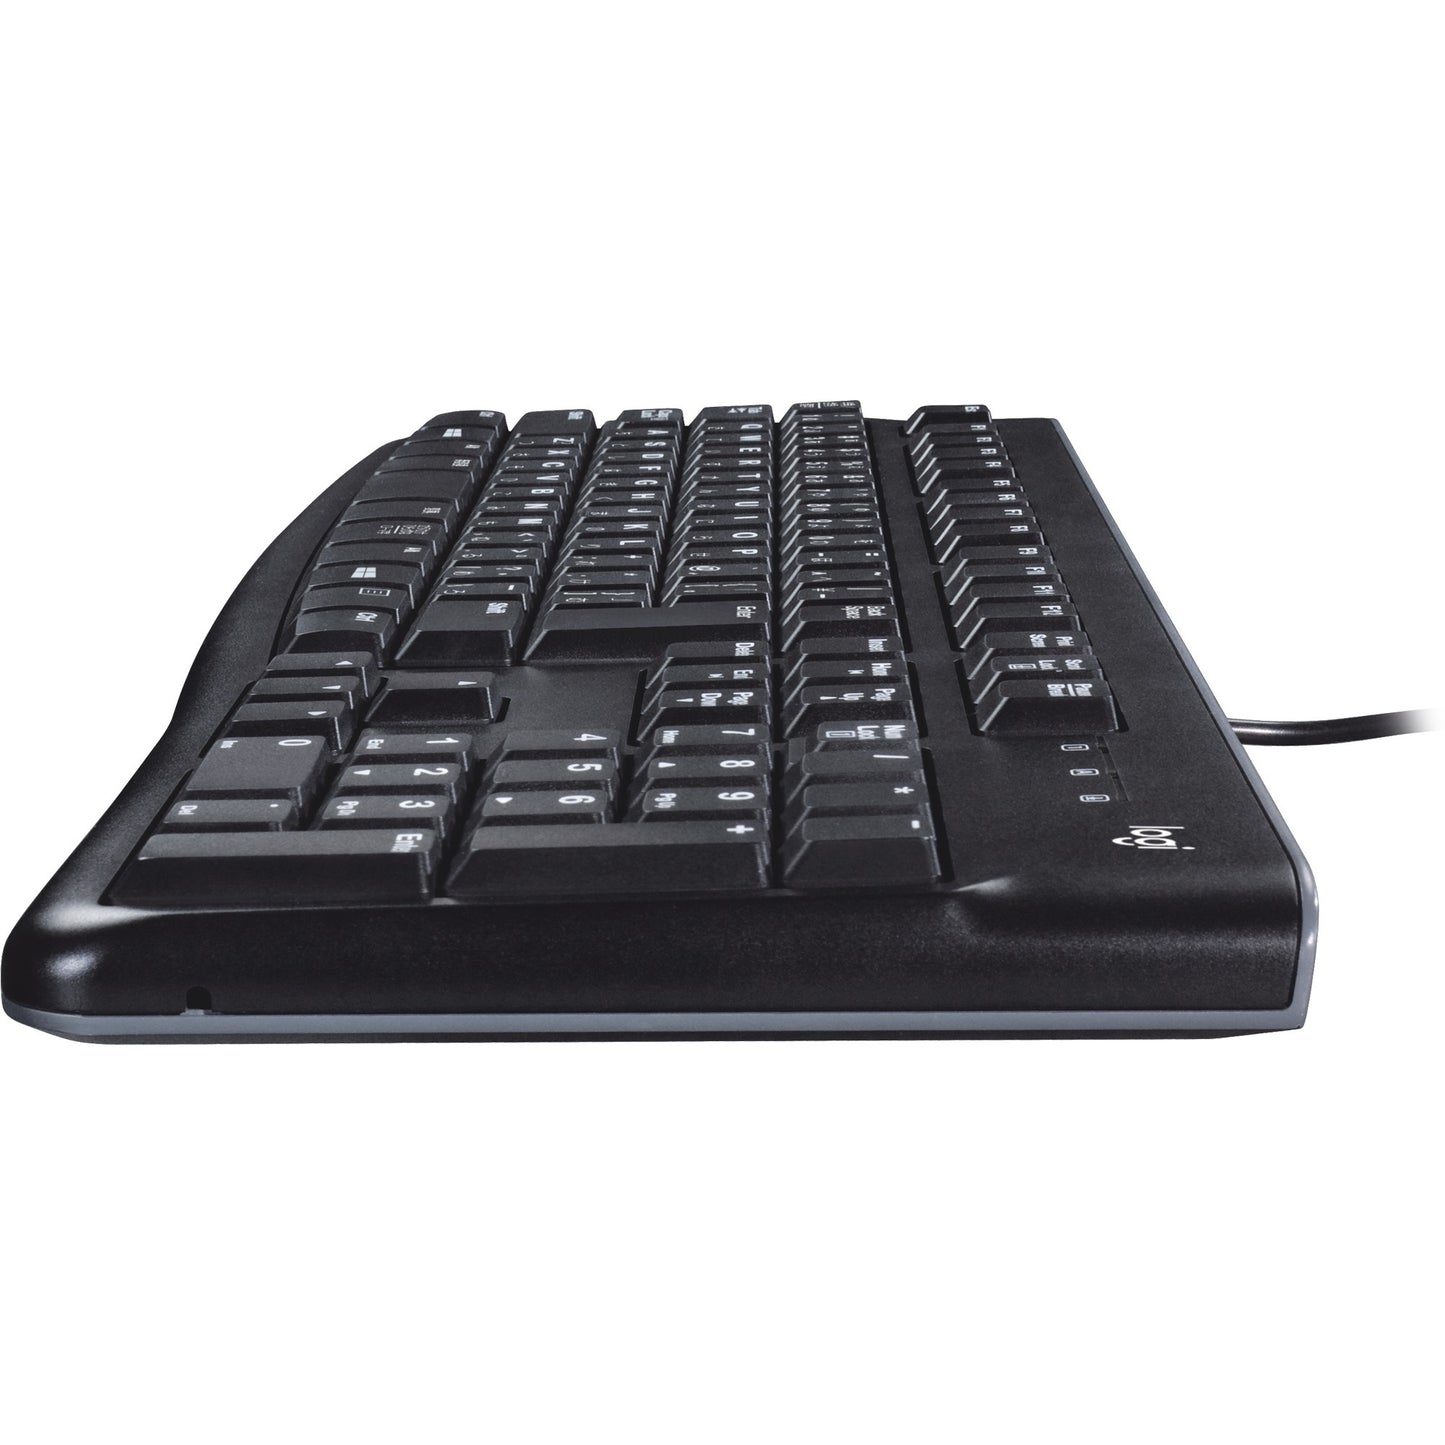 Logitech Keyboard K120 for business